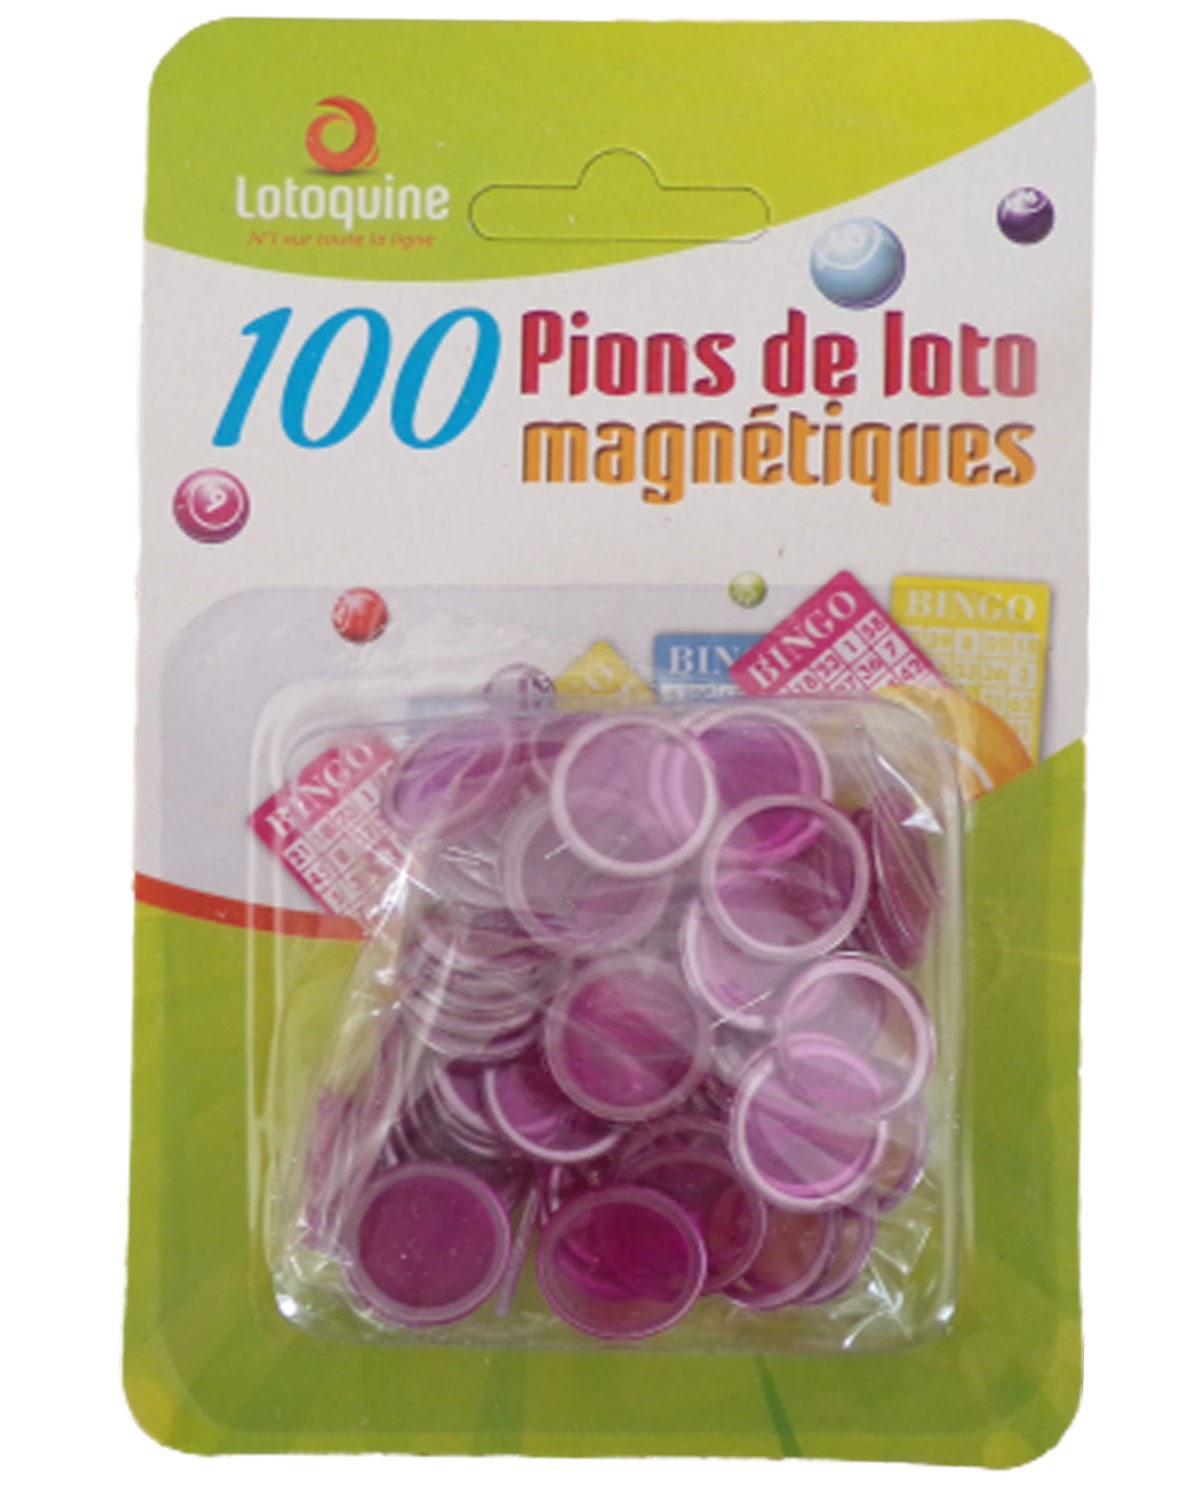 Boule de loto magnetique avec 100 pions - Jeux et Jouets